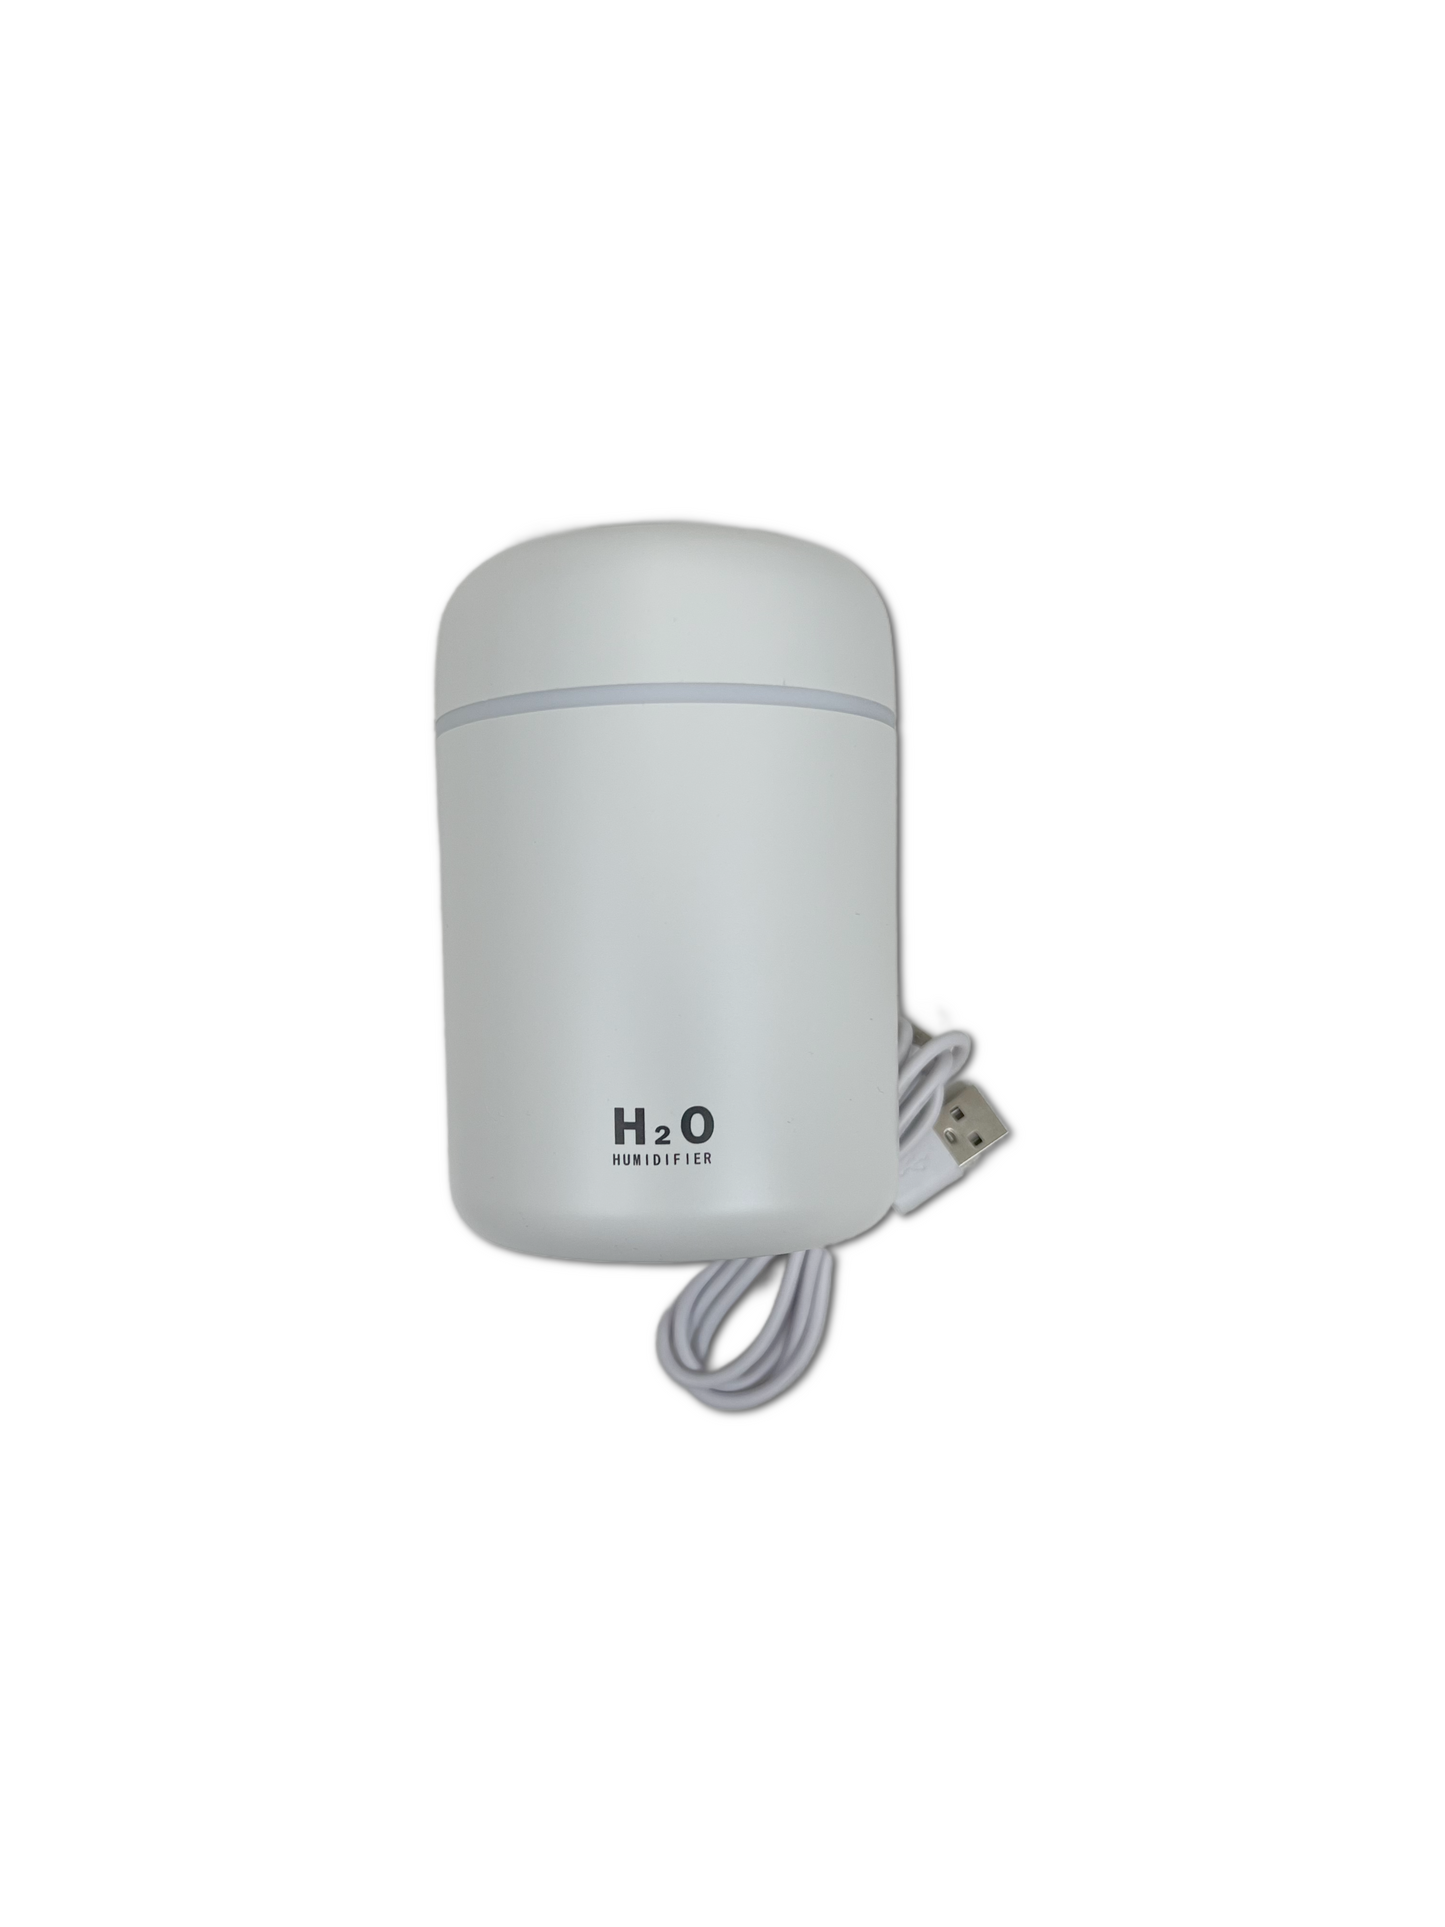 Portable Mini Humidifier/Essential Oil Diffuser